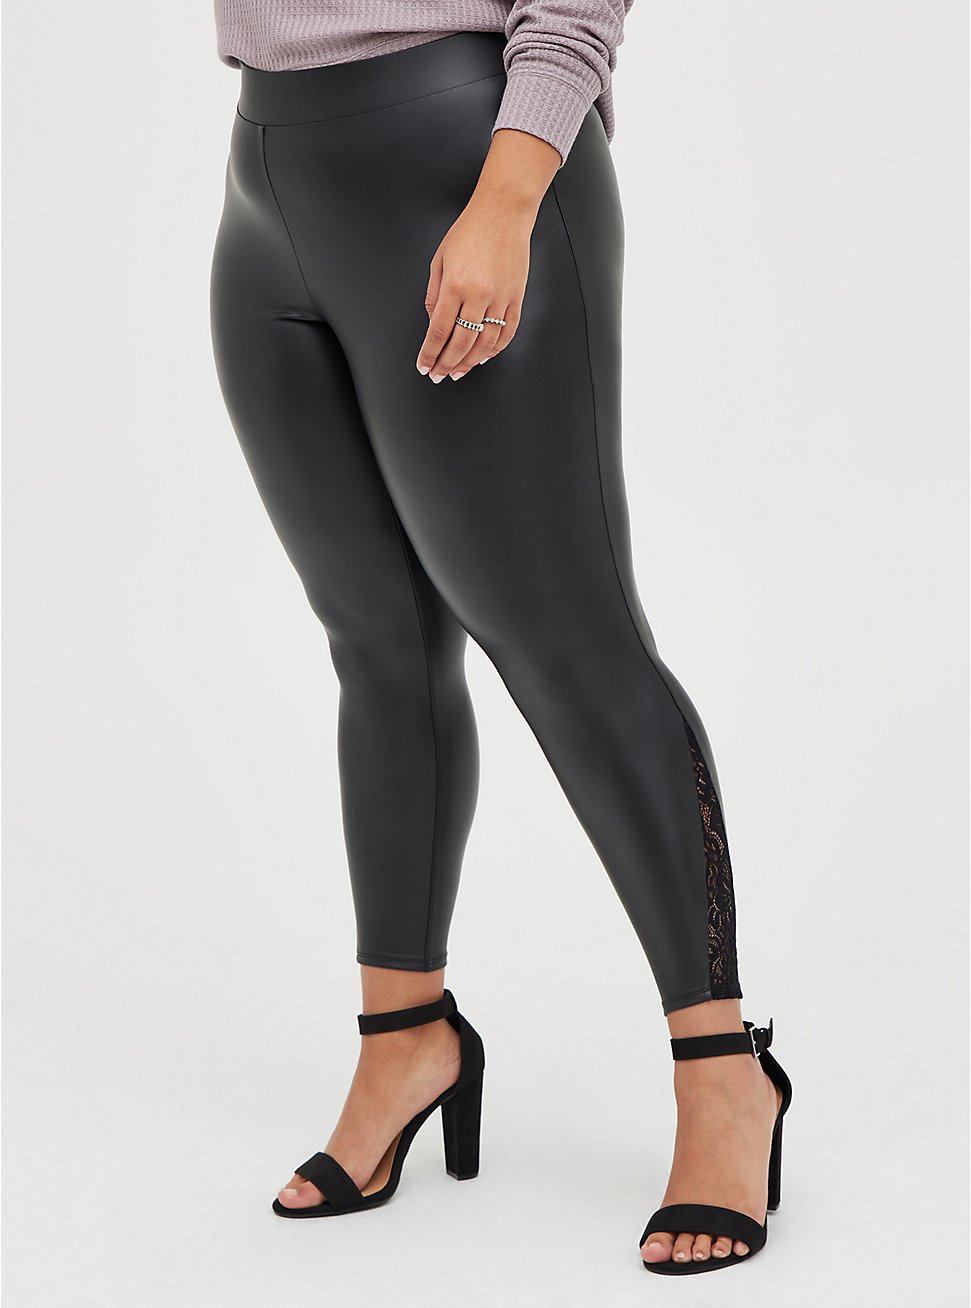 Premium Legging - Faux Leather & Lace Side Black, BLACK, hi-res